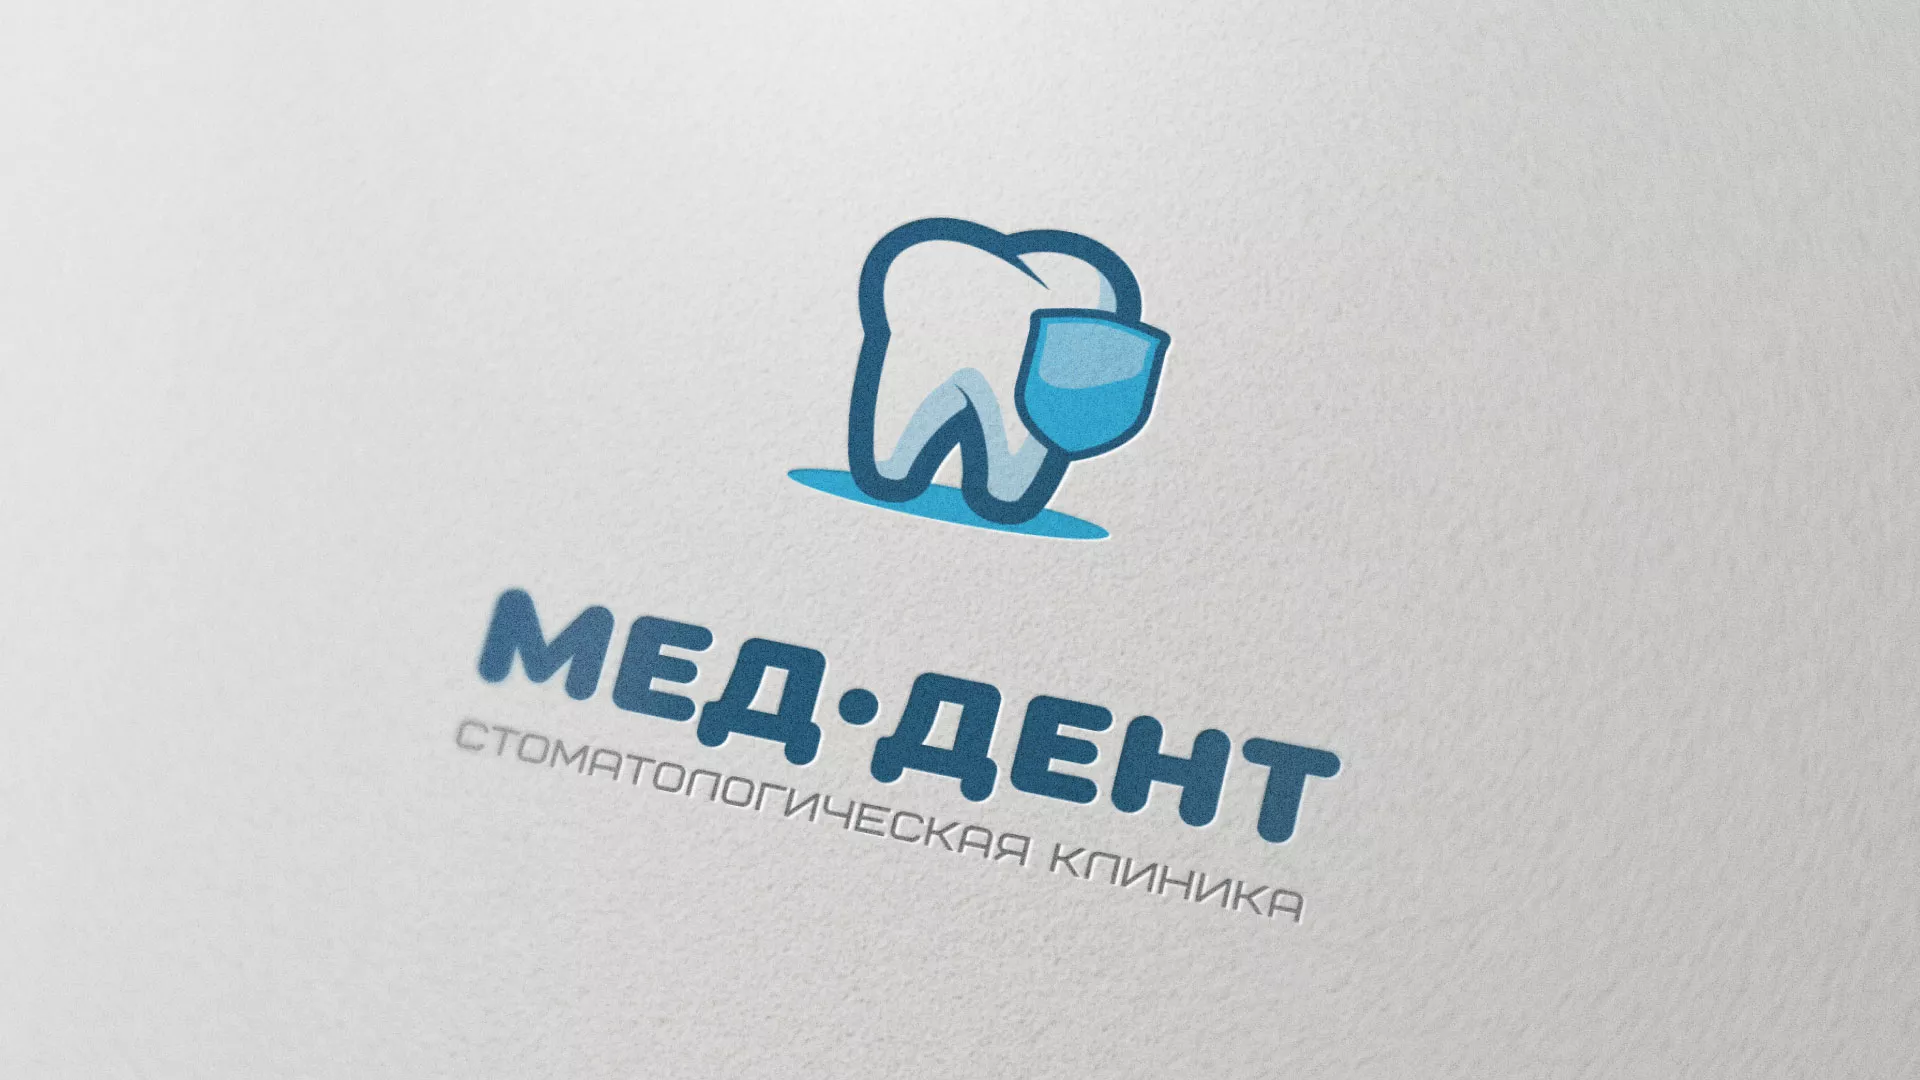 Разработка логотипа стоматологической клиники «МЕД-ДЕНТ» в Краснокаменске